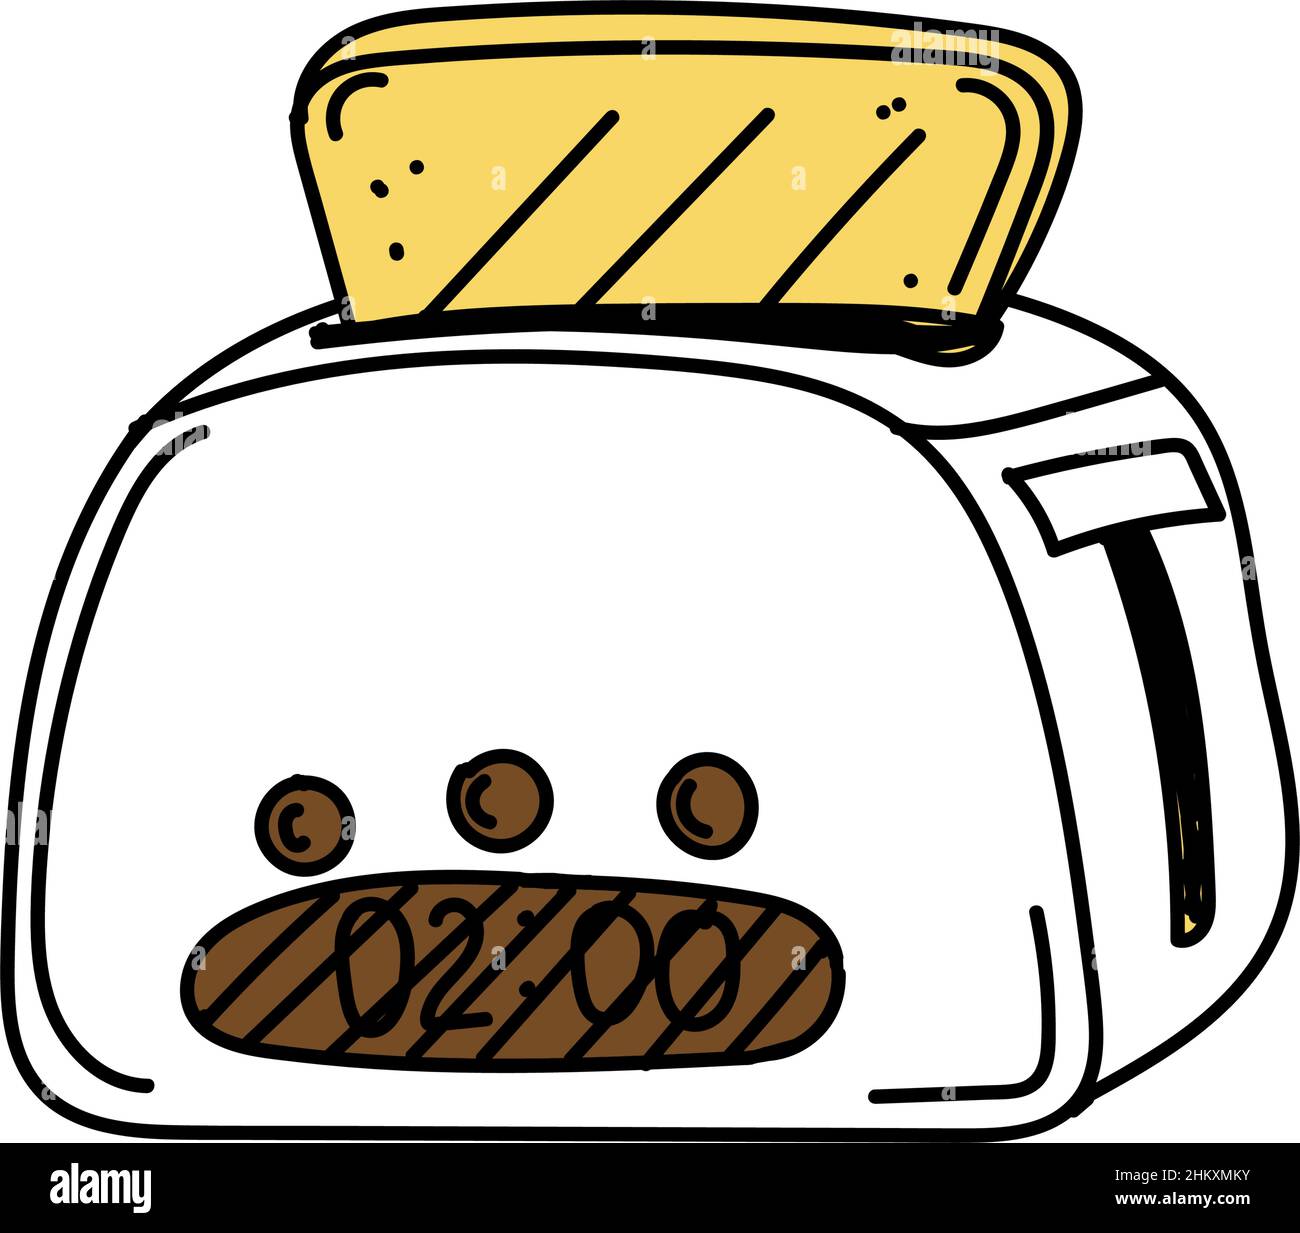 Toaster, handgezeichnete Doodle-Elemente. Frühstück. Guten Morgen. Gesunde Ernährung. Warmes Brot. Toast. Ein einfacher Doodle-Style-Vektor. Stock Vektor